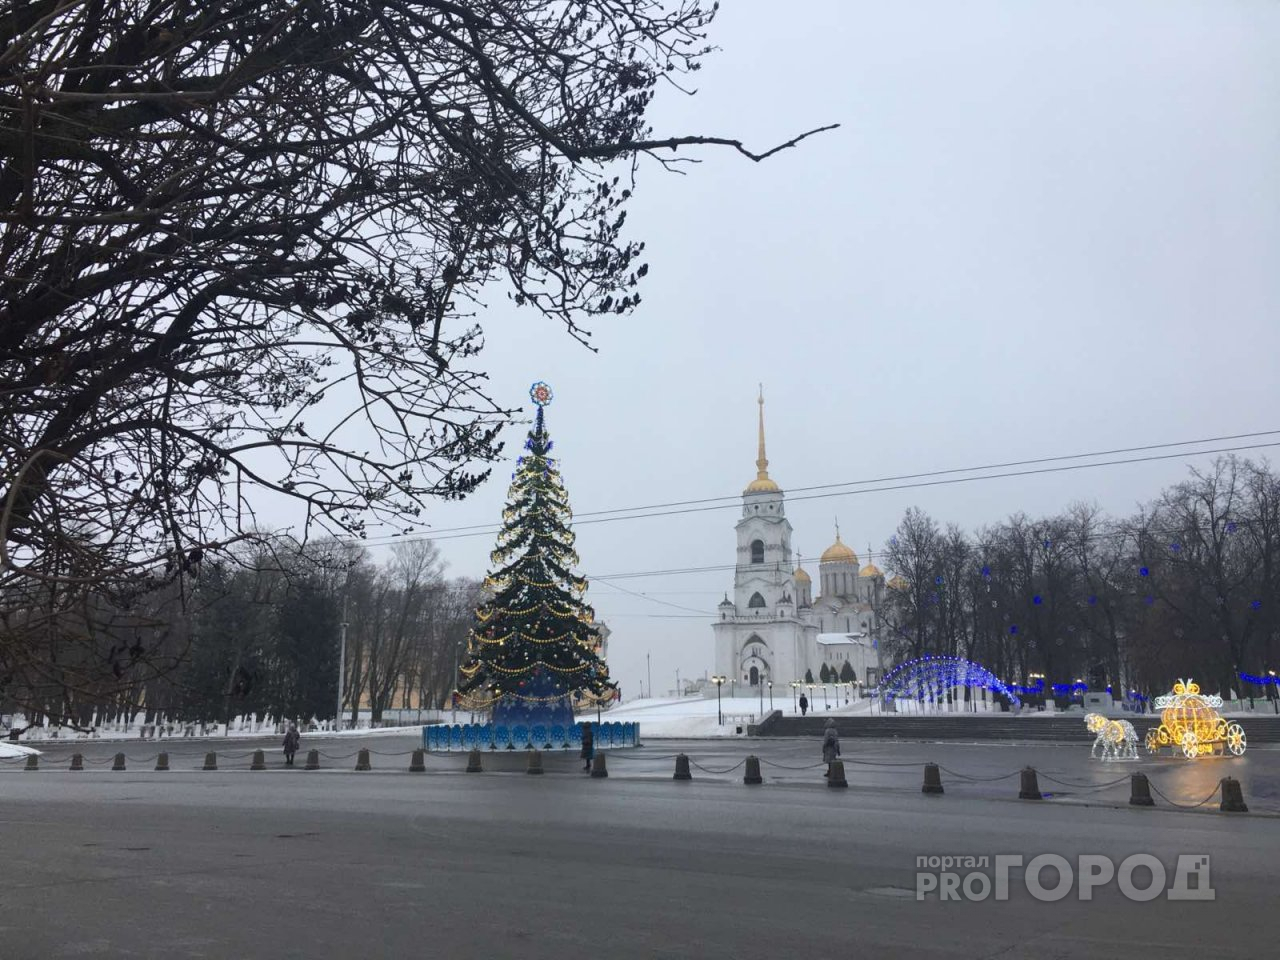 Владимирская область стала самым востребованным маршрутом у туристов